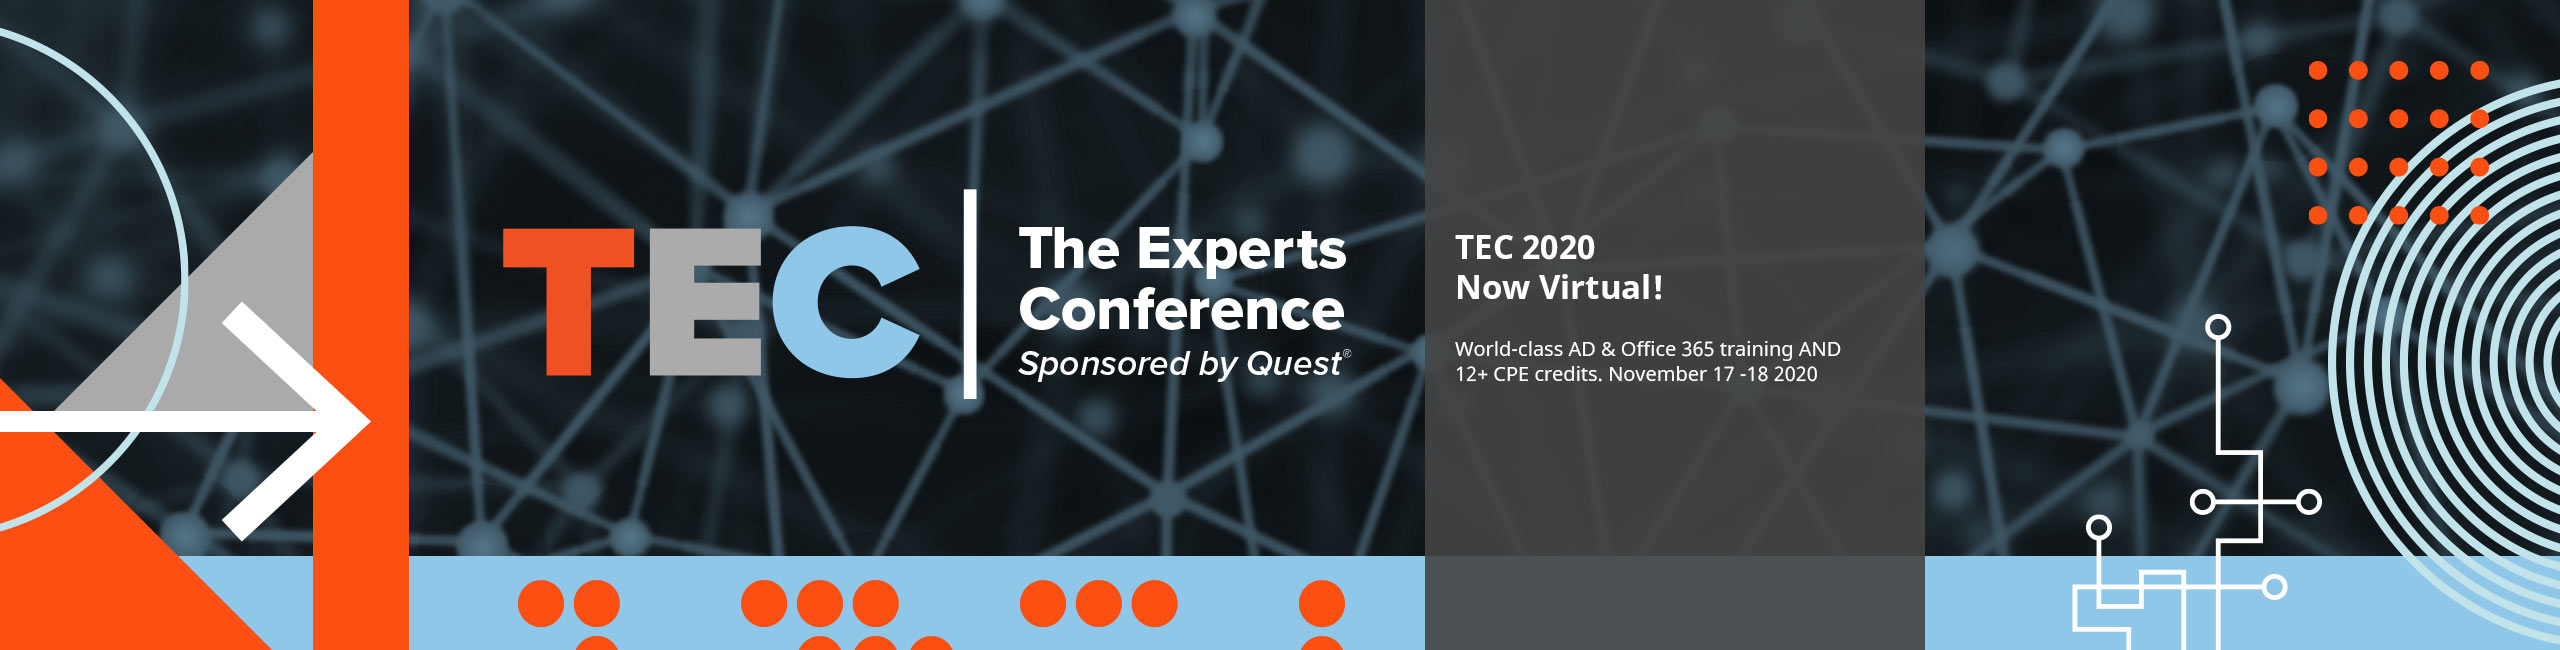 TEC Virtual 2020